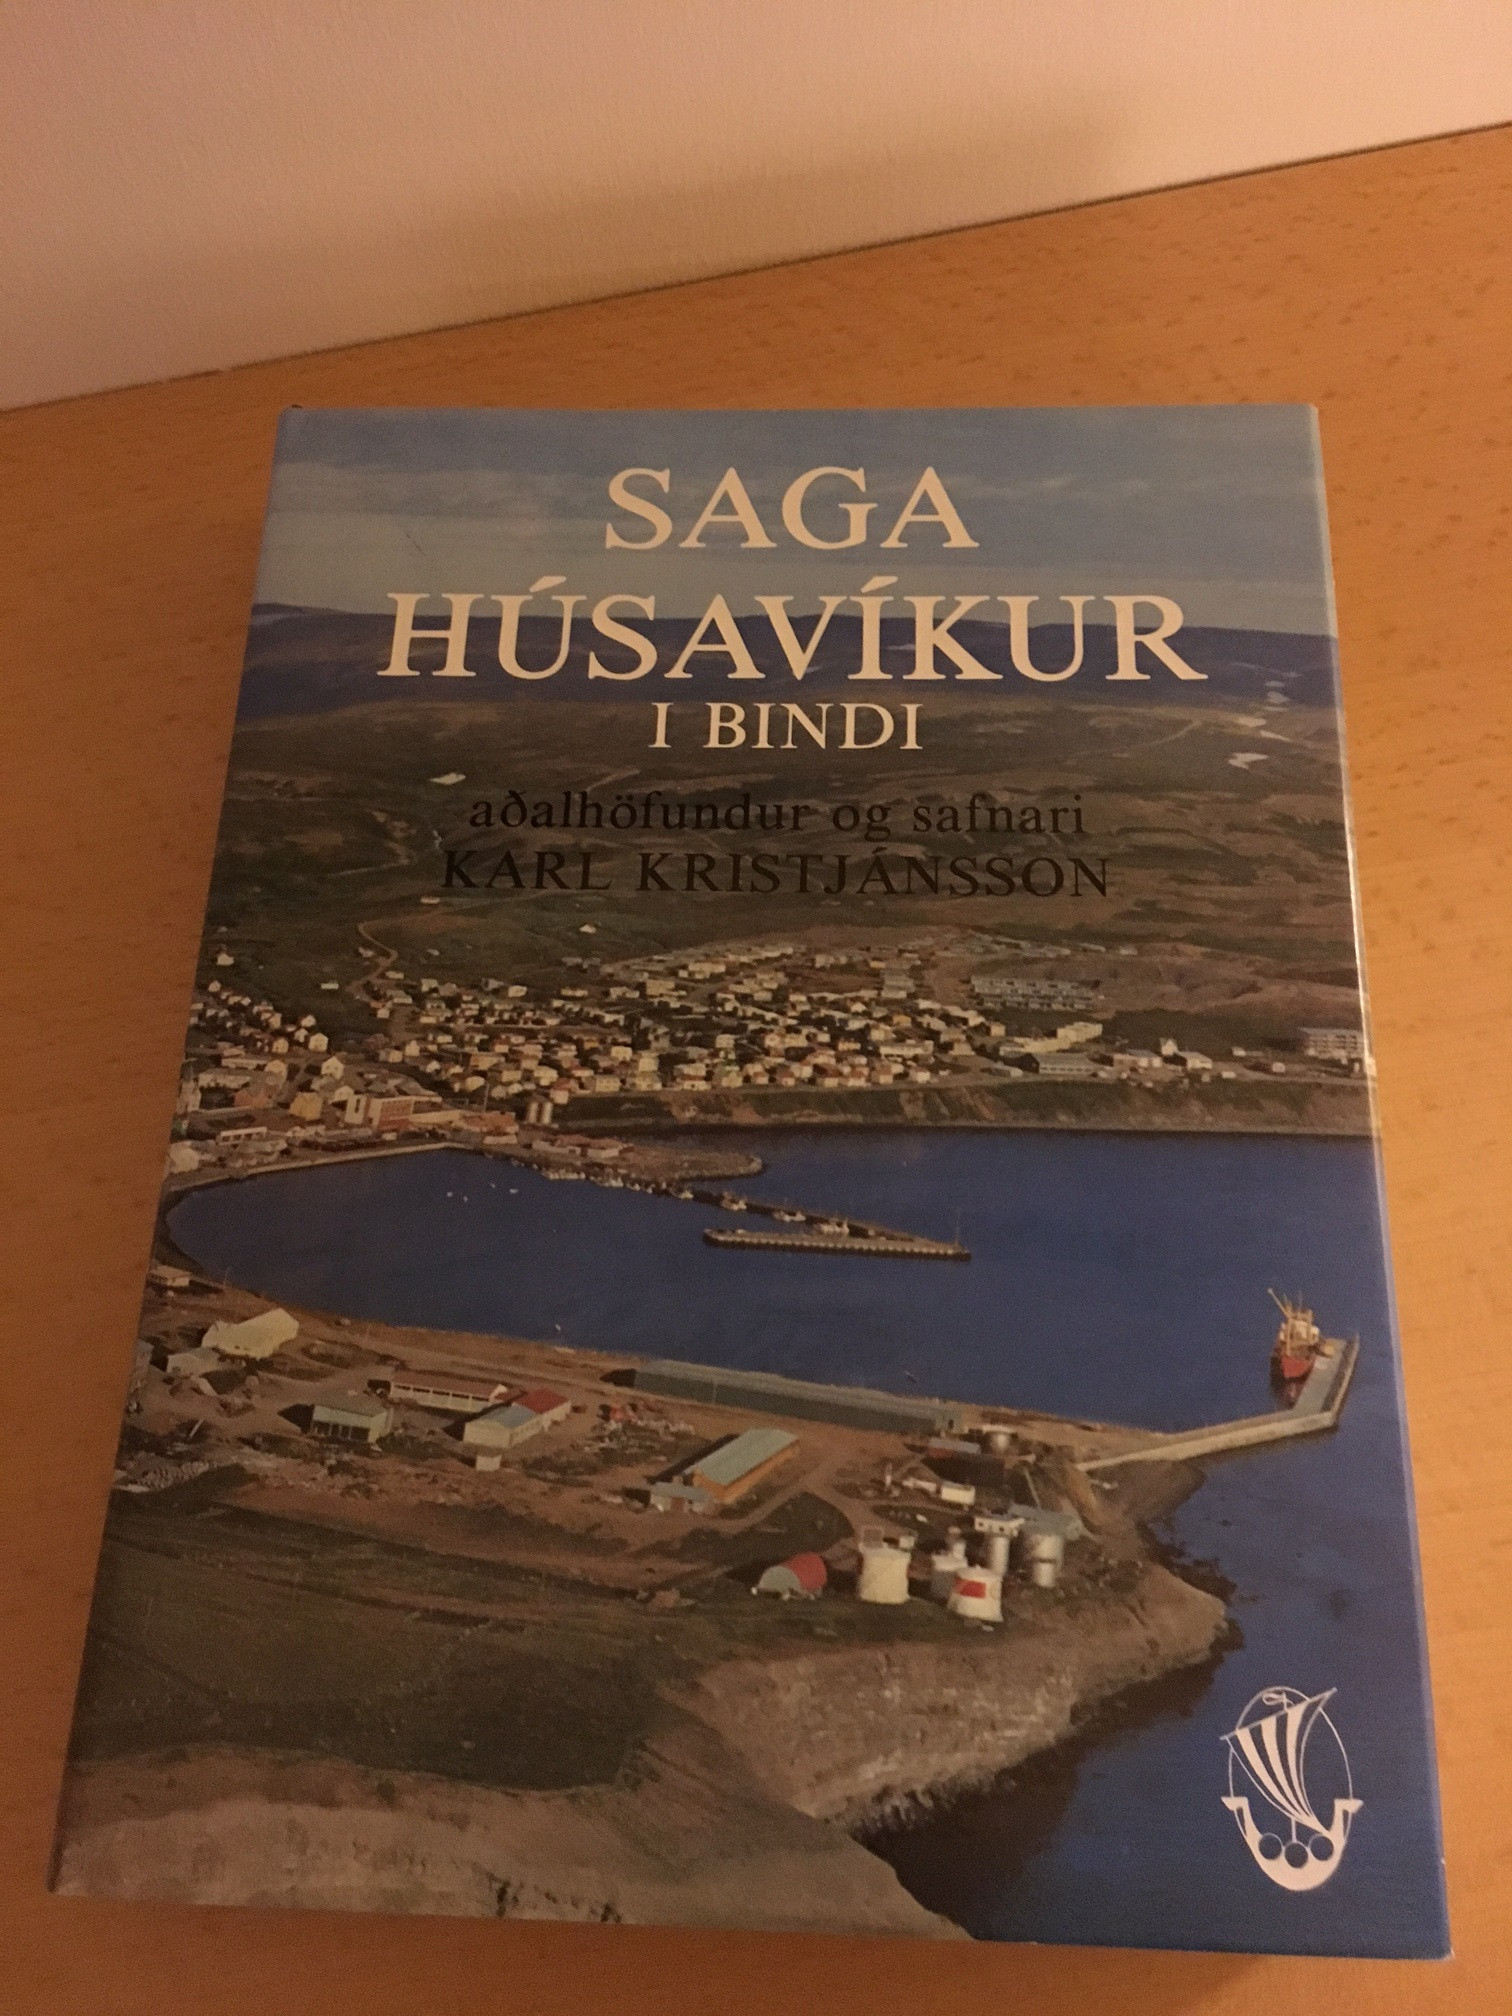 Saga Húsavíkur á jólatilboði